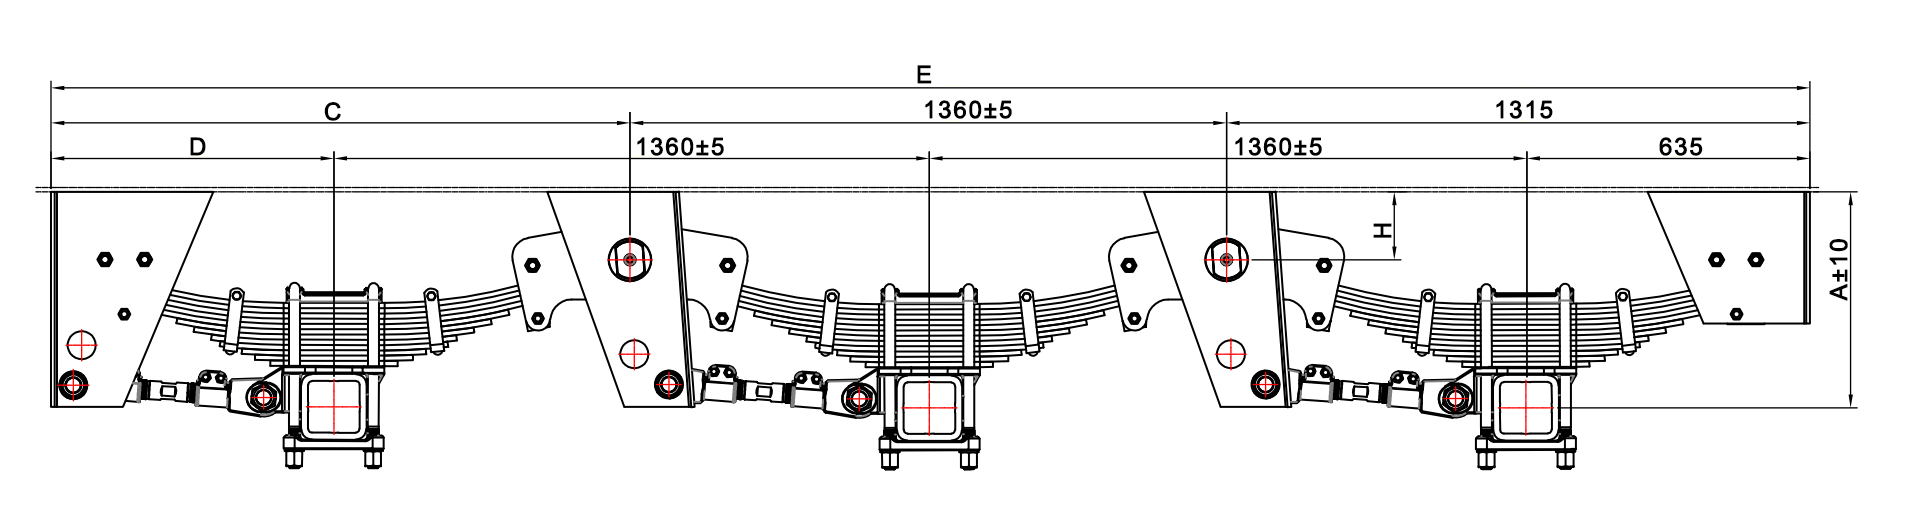 SAF-3-axle suspension